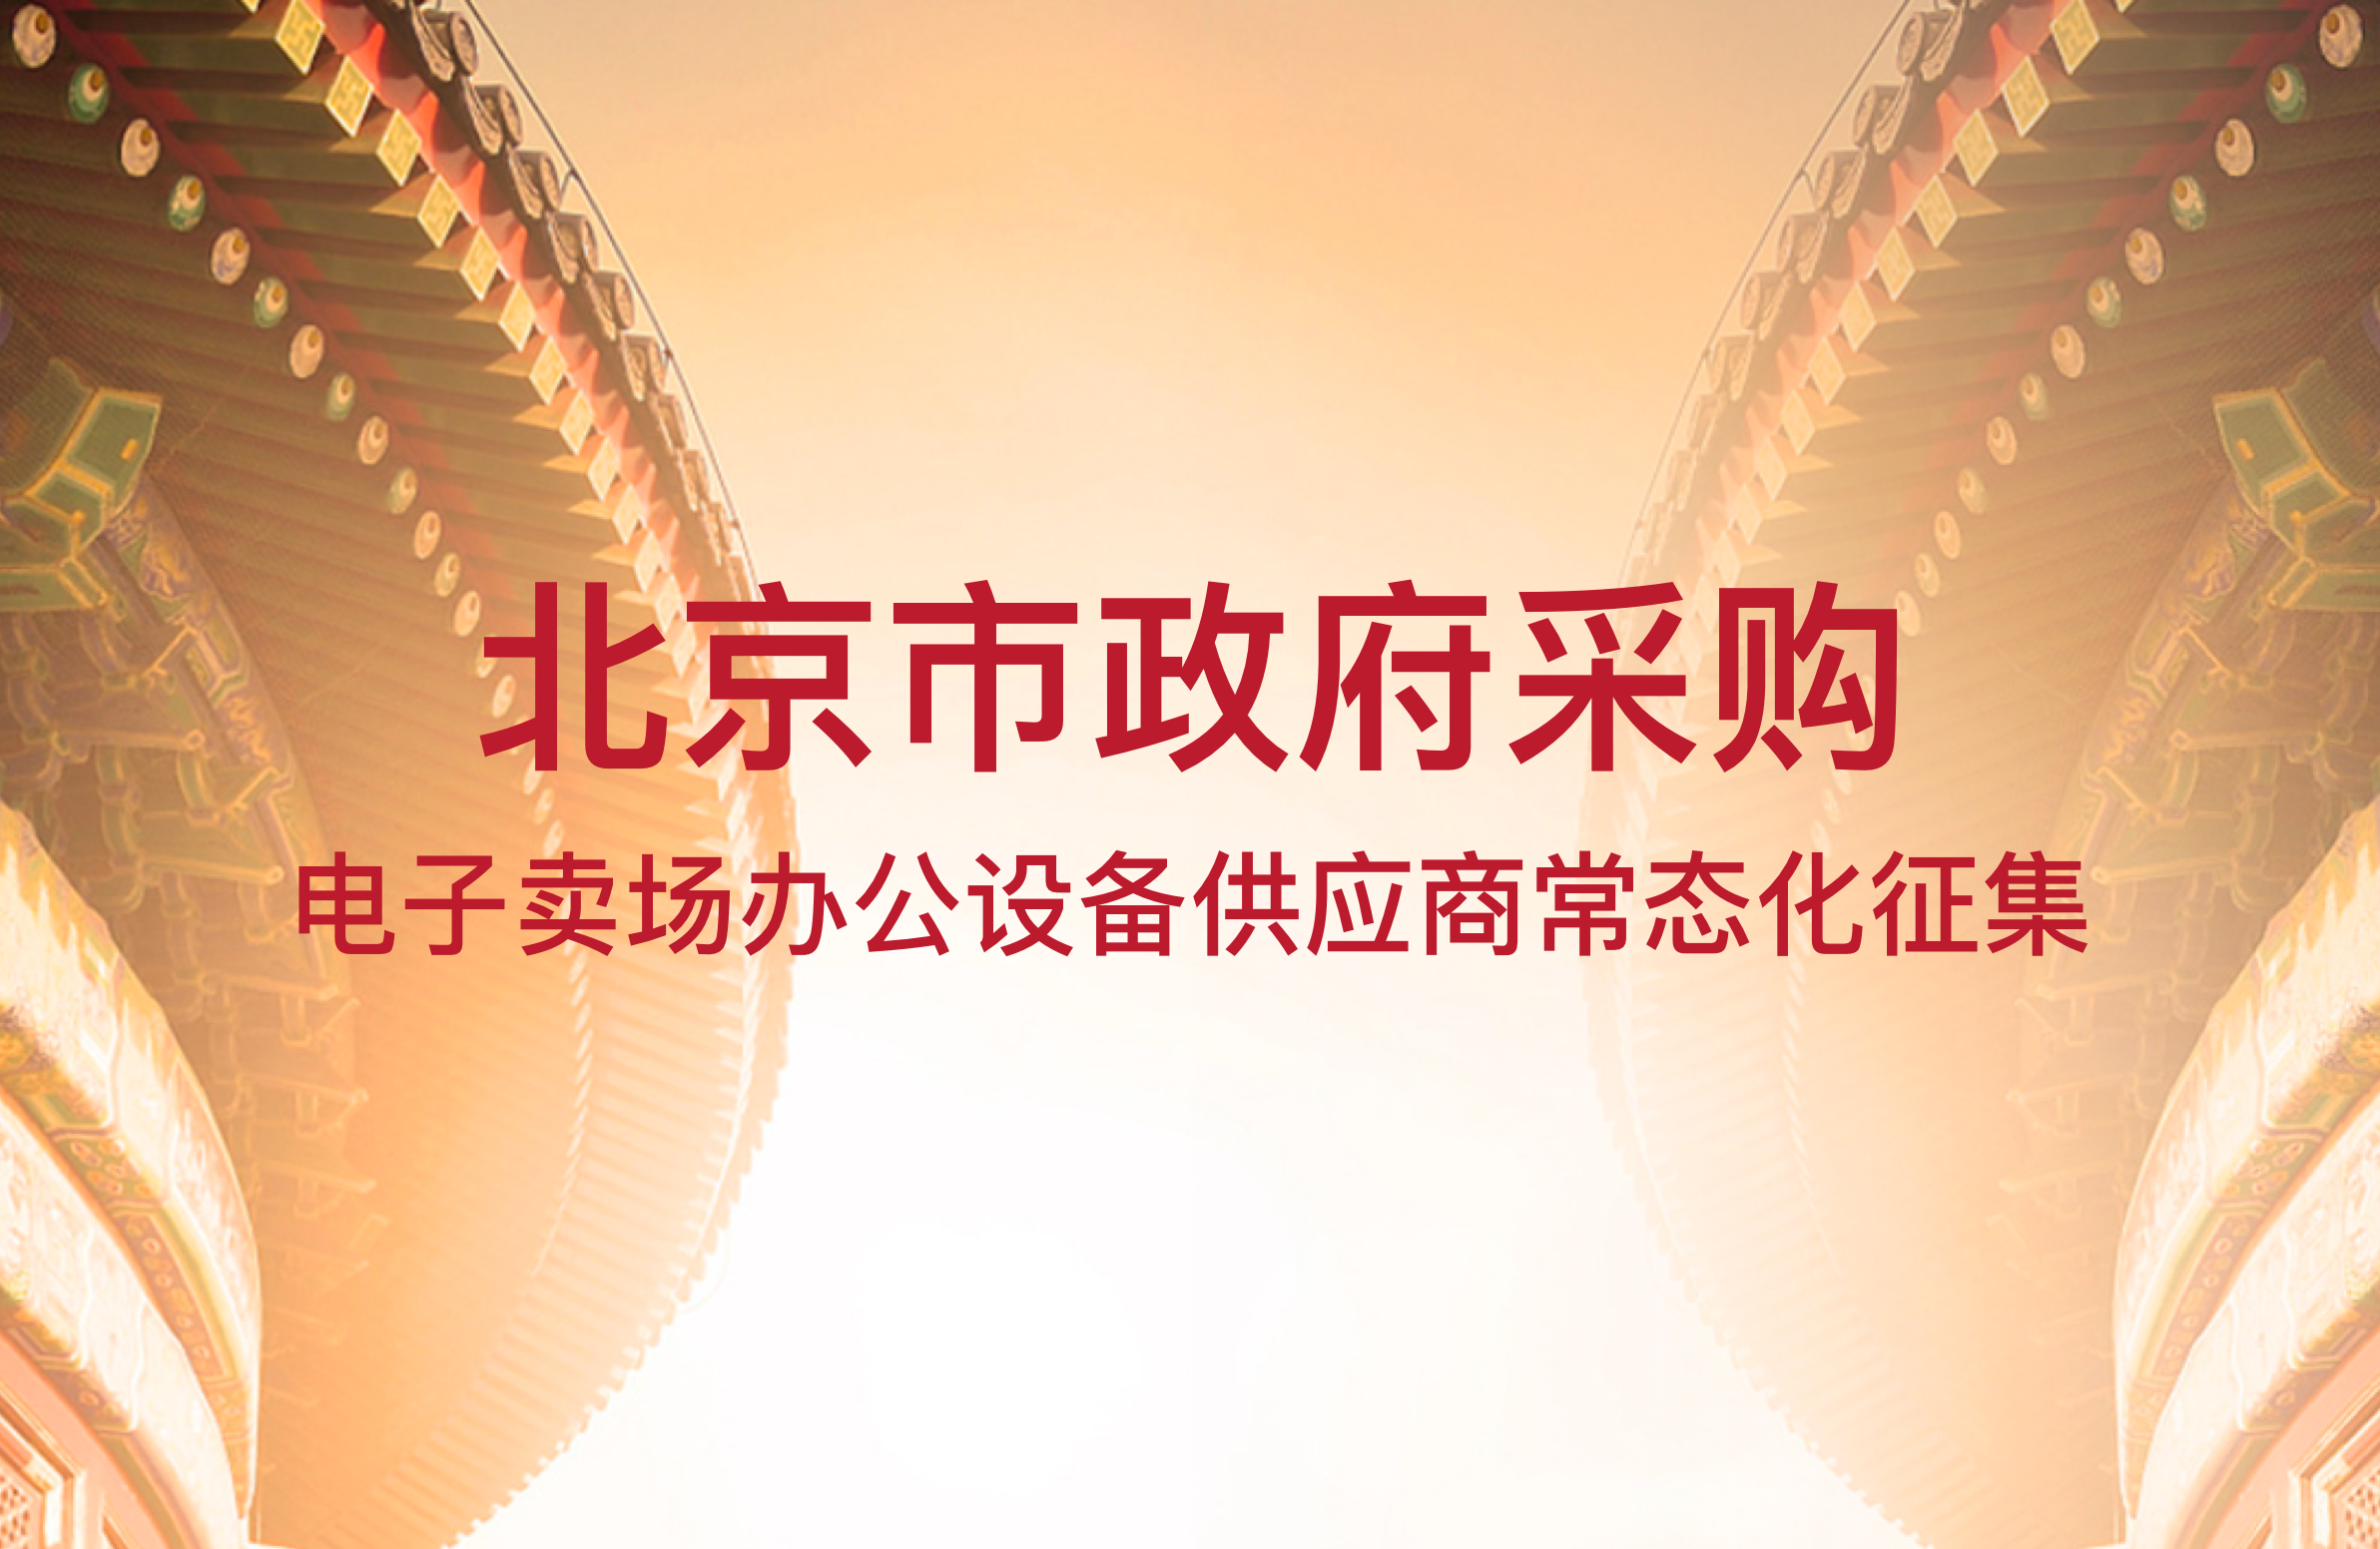 关于开展北京市政府采购电子卖场办公设备供应商常态化征集入驻的通知